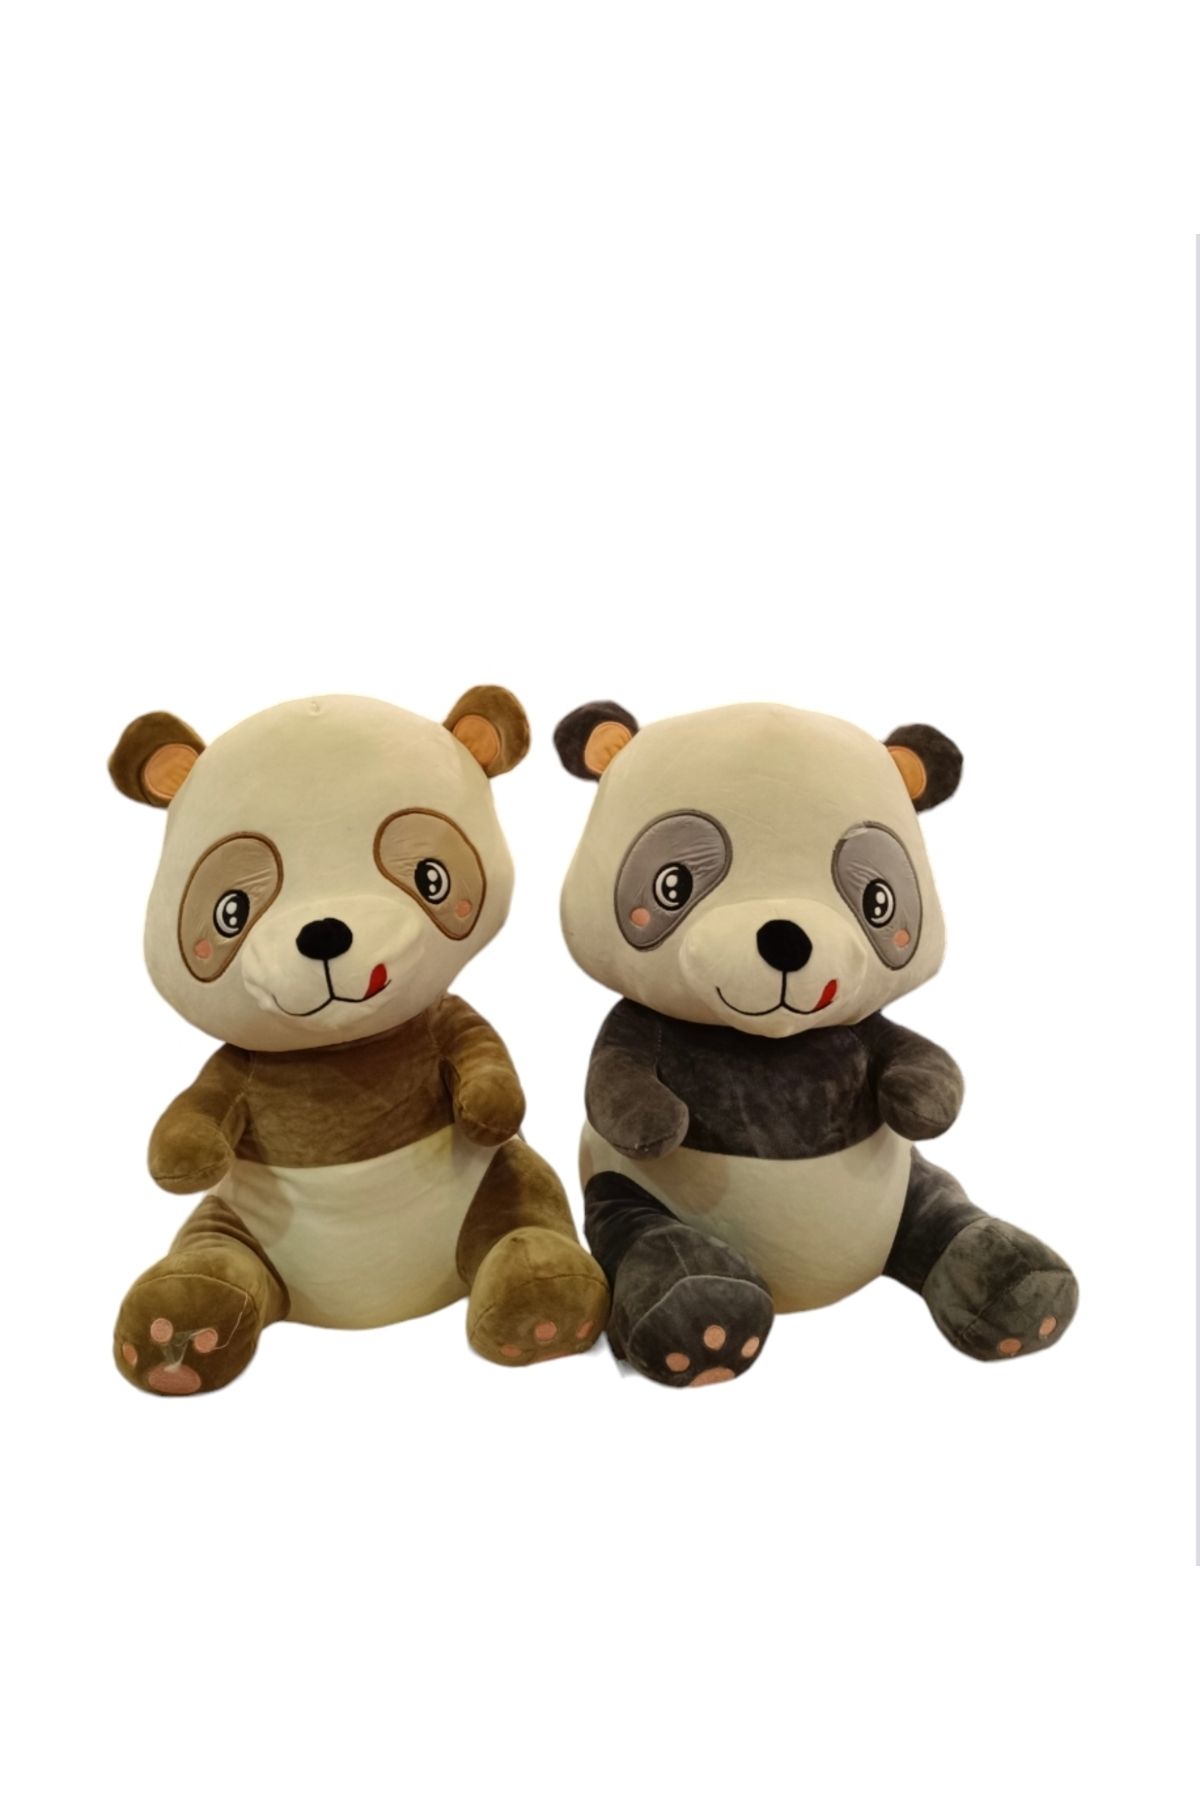 Happy Toys Sevimli panda peluş oyuncak 40cm yılbaşı hediyelik doğum günü gift99